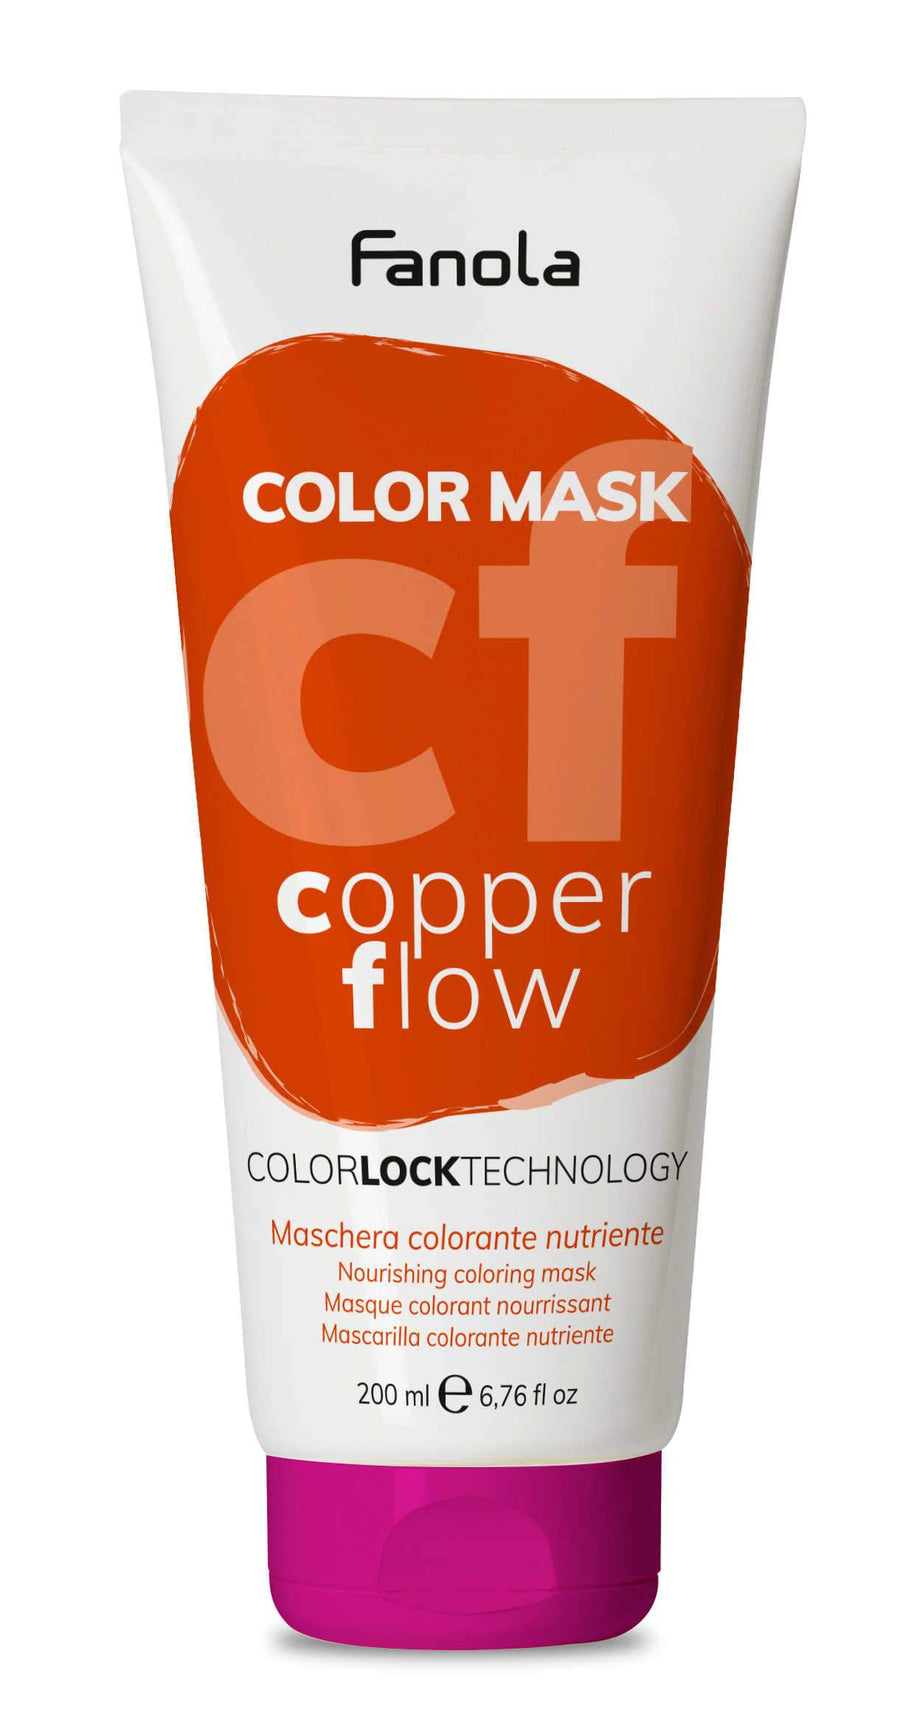 Fanola Color Mask, 200 ml Hair Treatments Fanola Copper Flow 